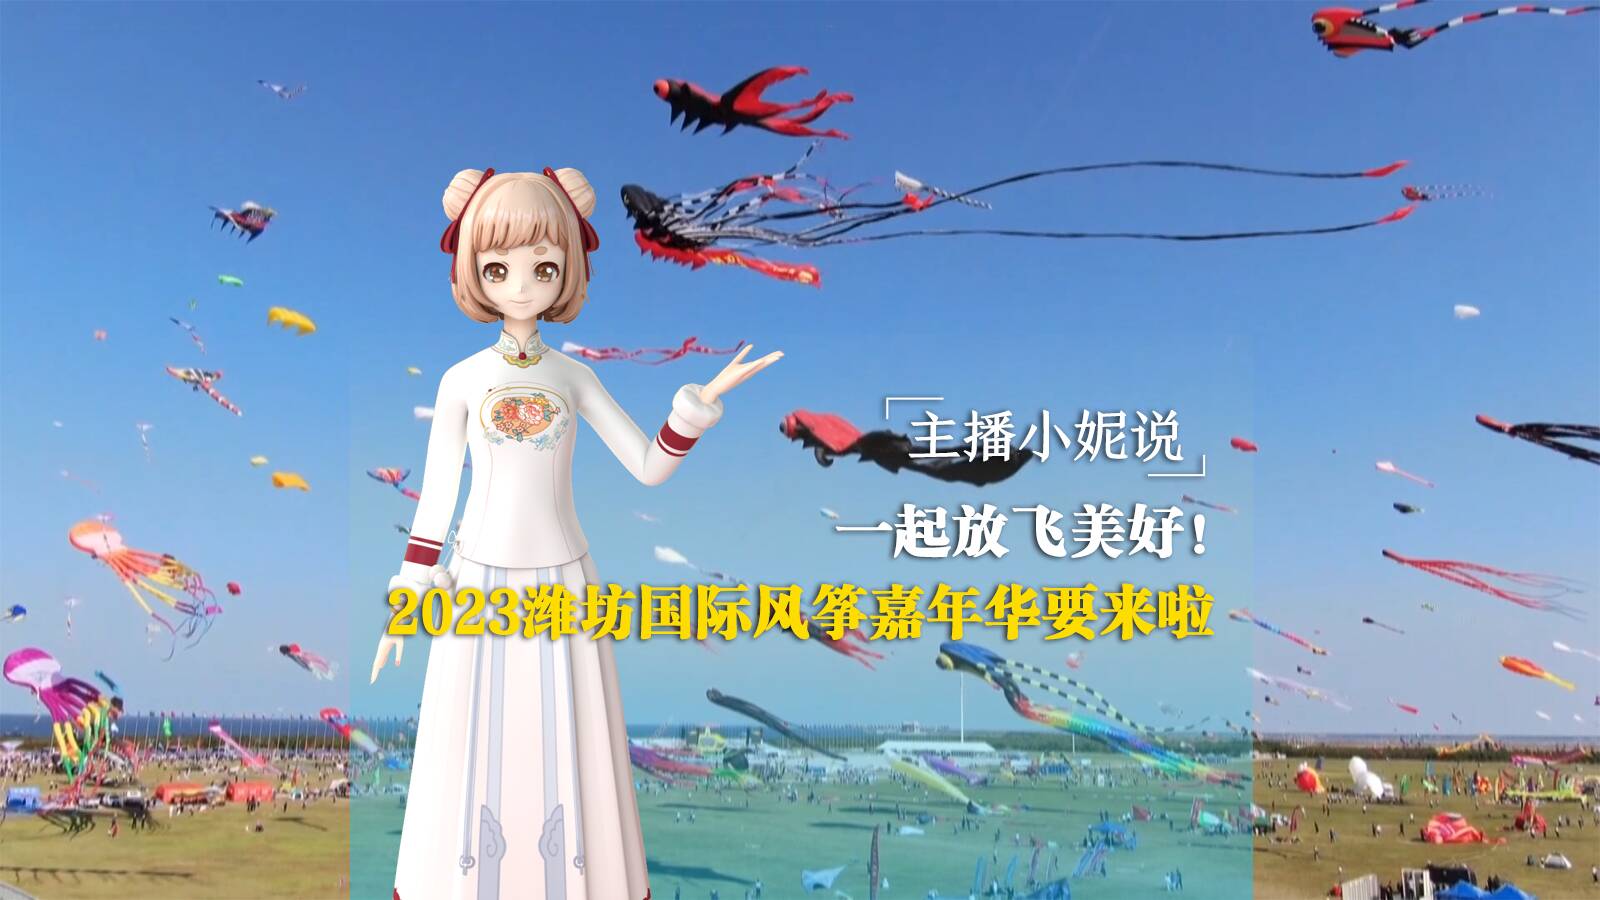 主播小妮说丨一起放飞美好！2023潍坊国际风筝嘉年华要来啦